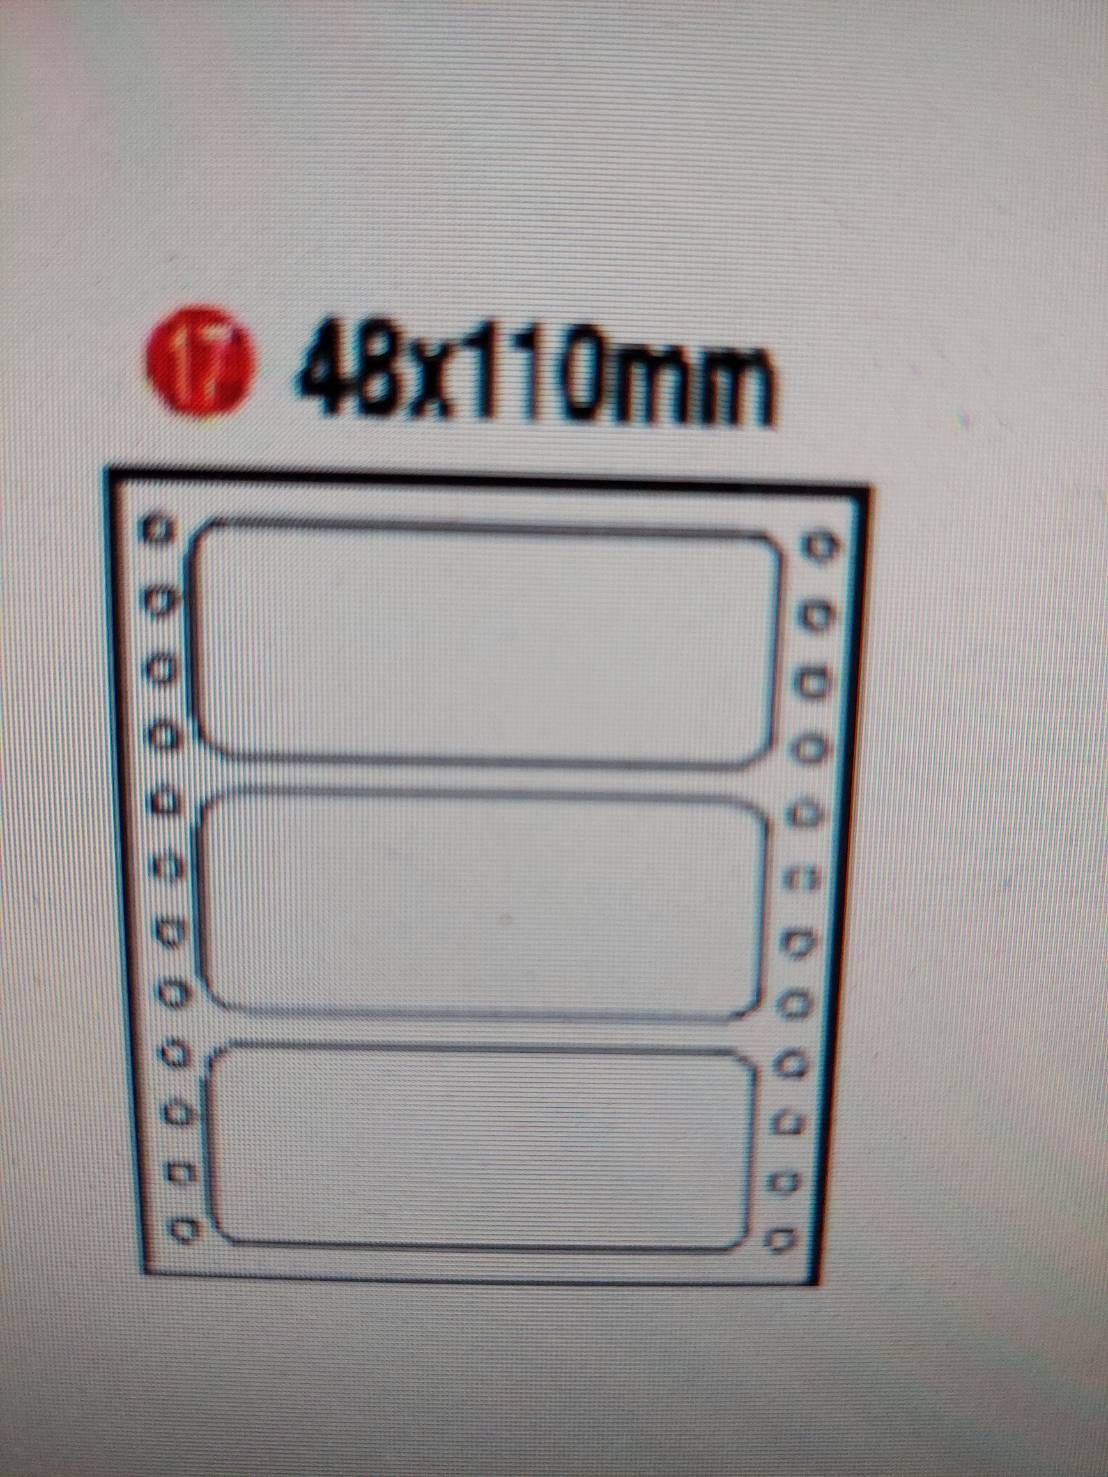 電腦連續標籤紙48*110mm-單/6000片/箱